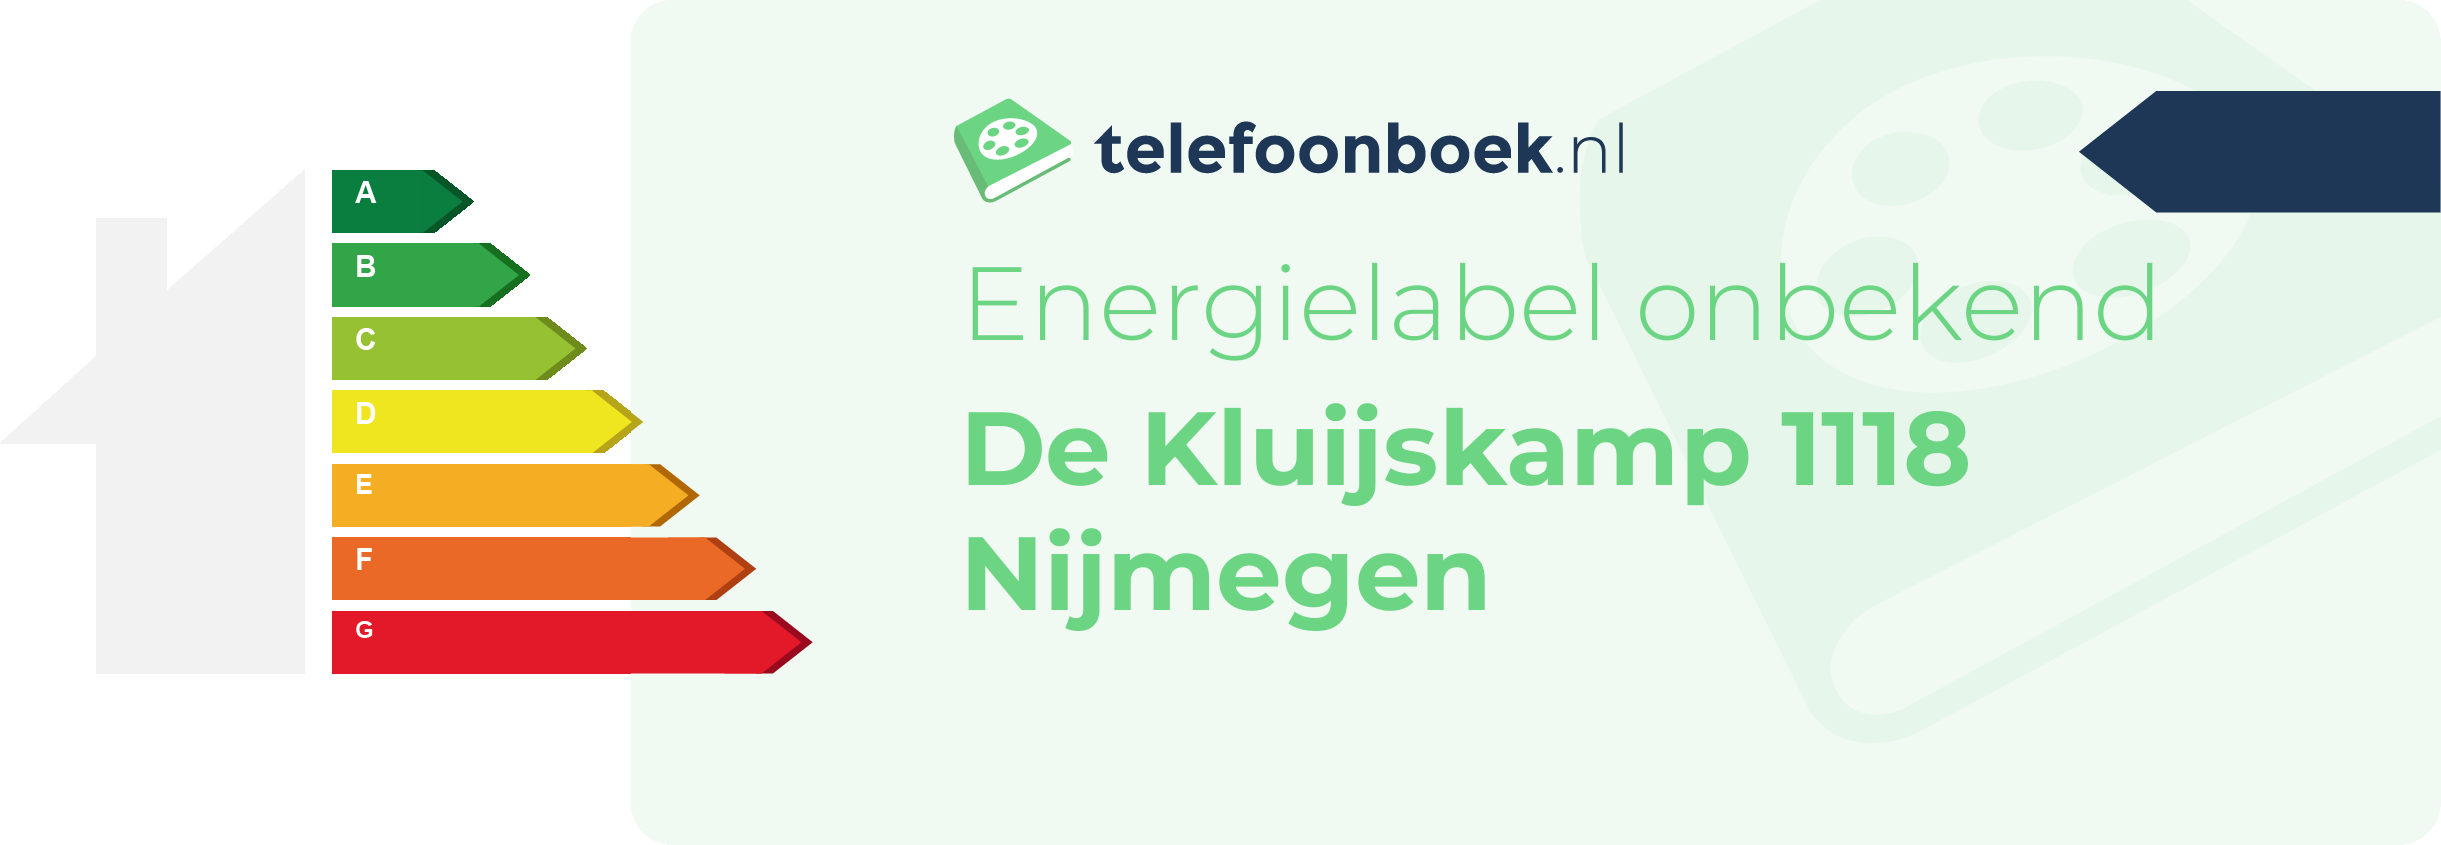 Energielabel De Kluijskamp 1118 Nijmegen